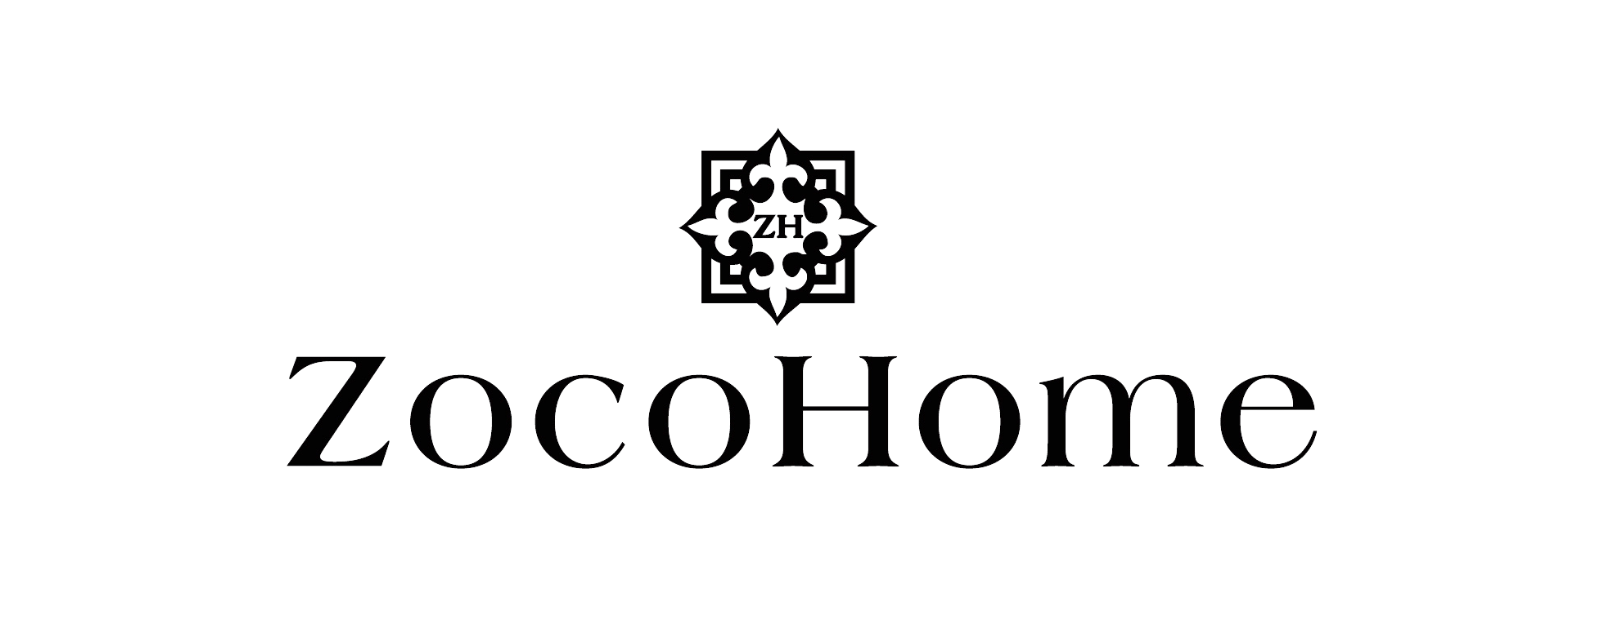 (c) Zocohome.com